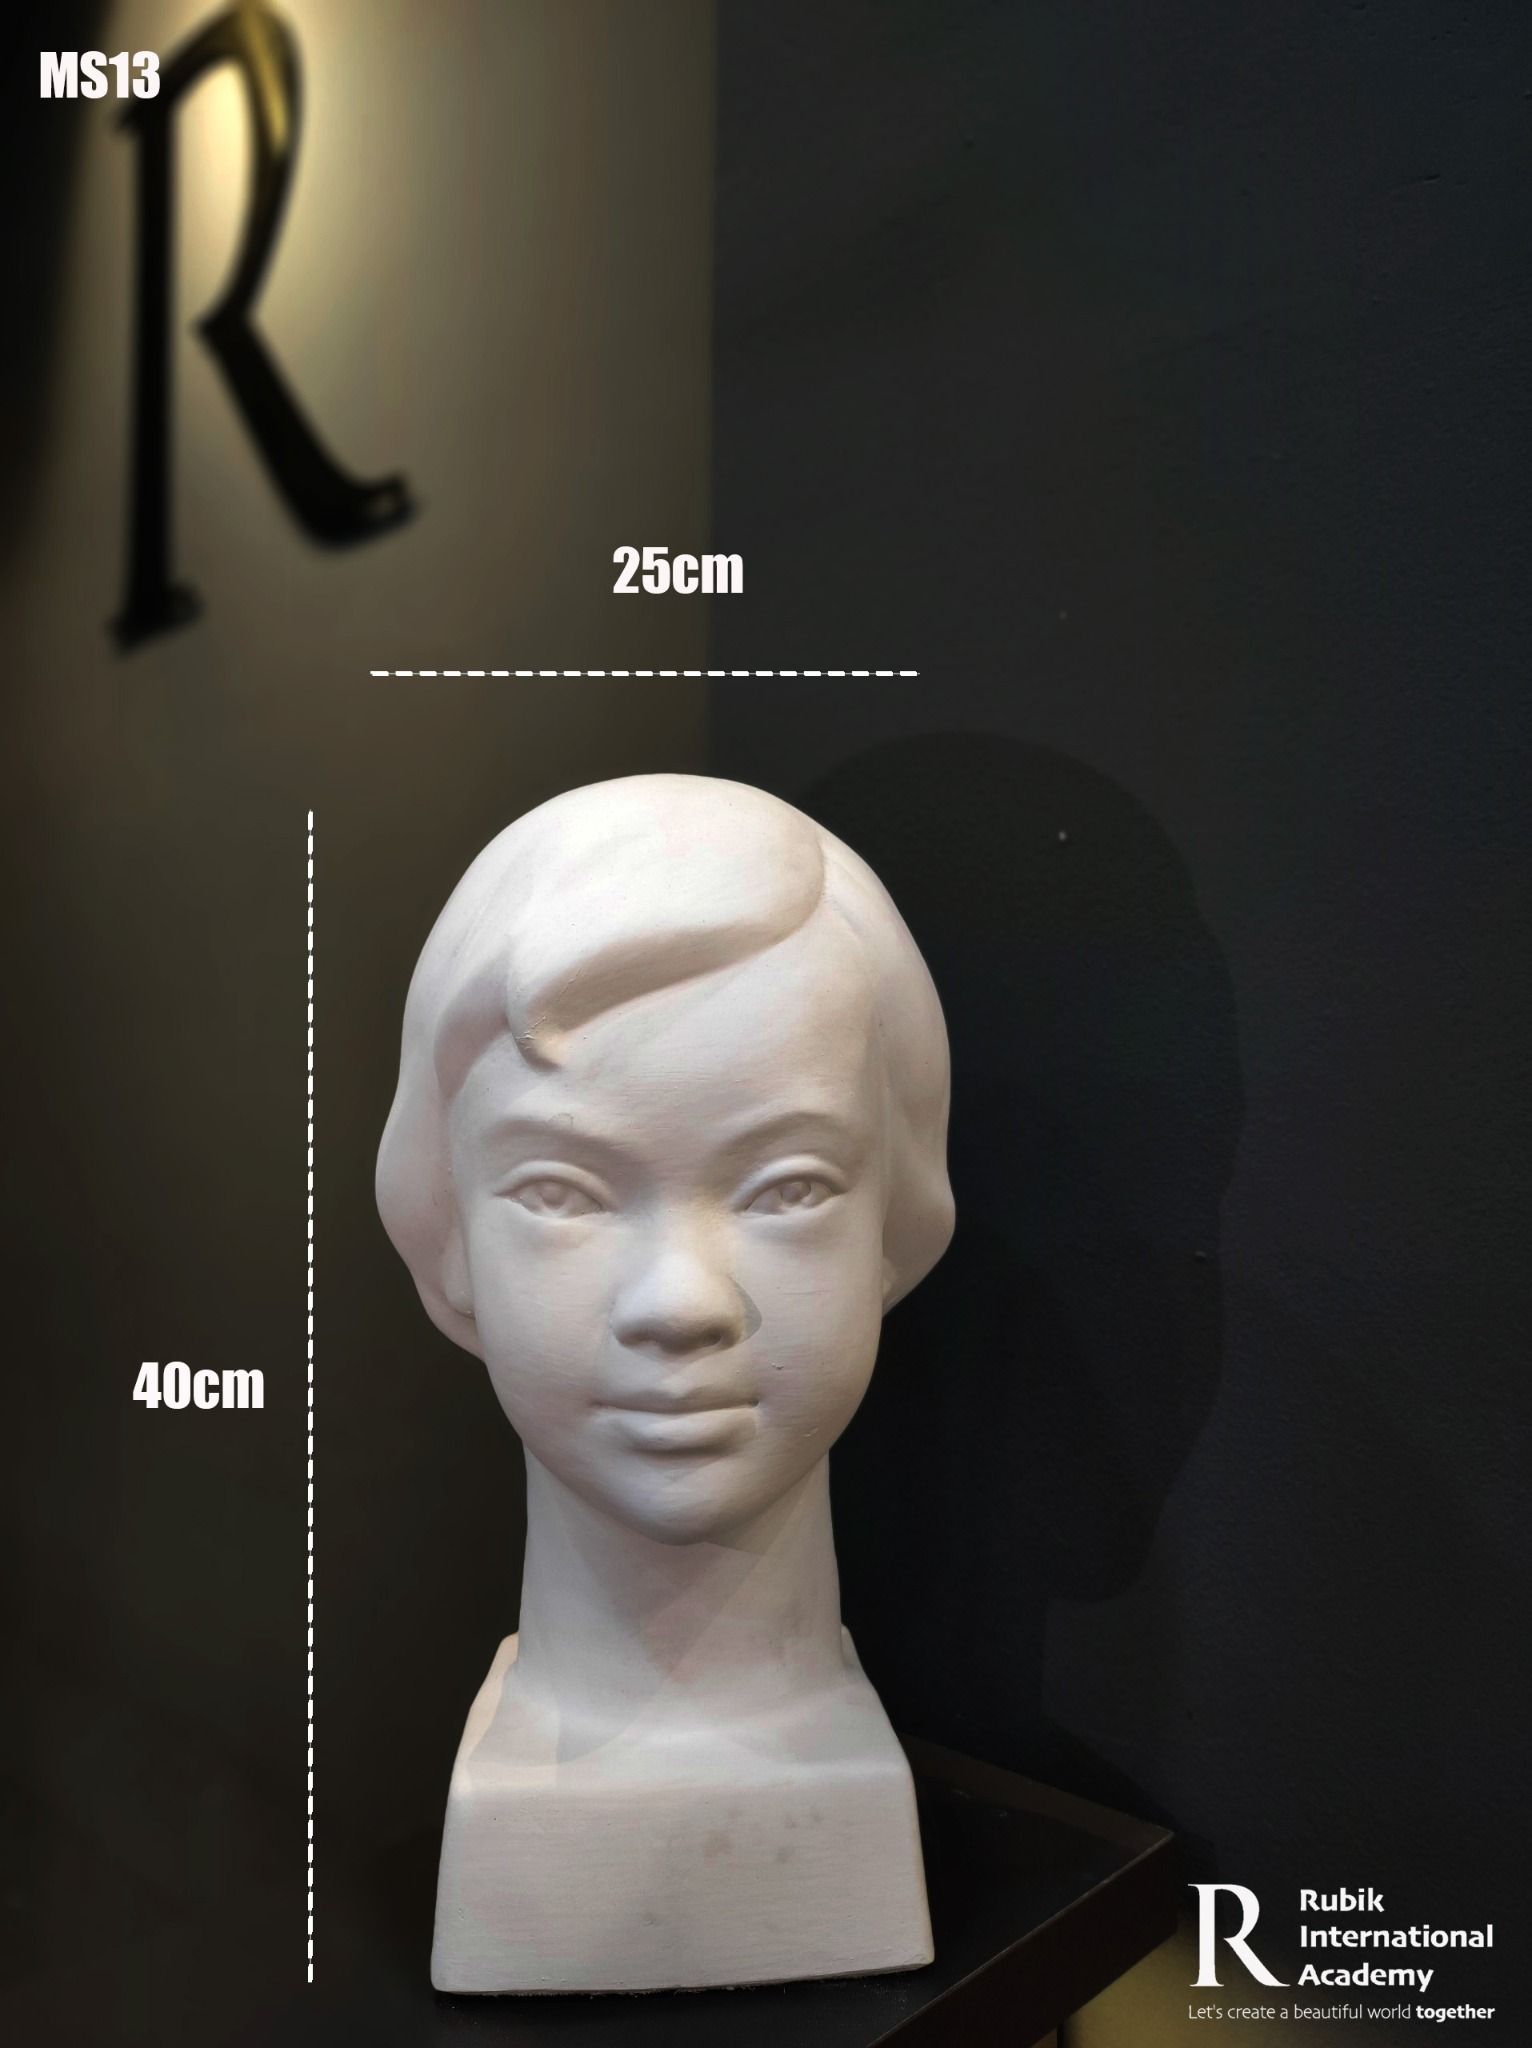  Đầu tượng Thạch cao bé gái- MS13 